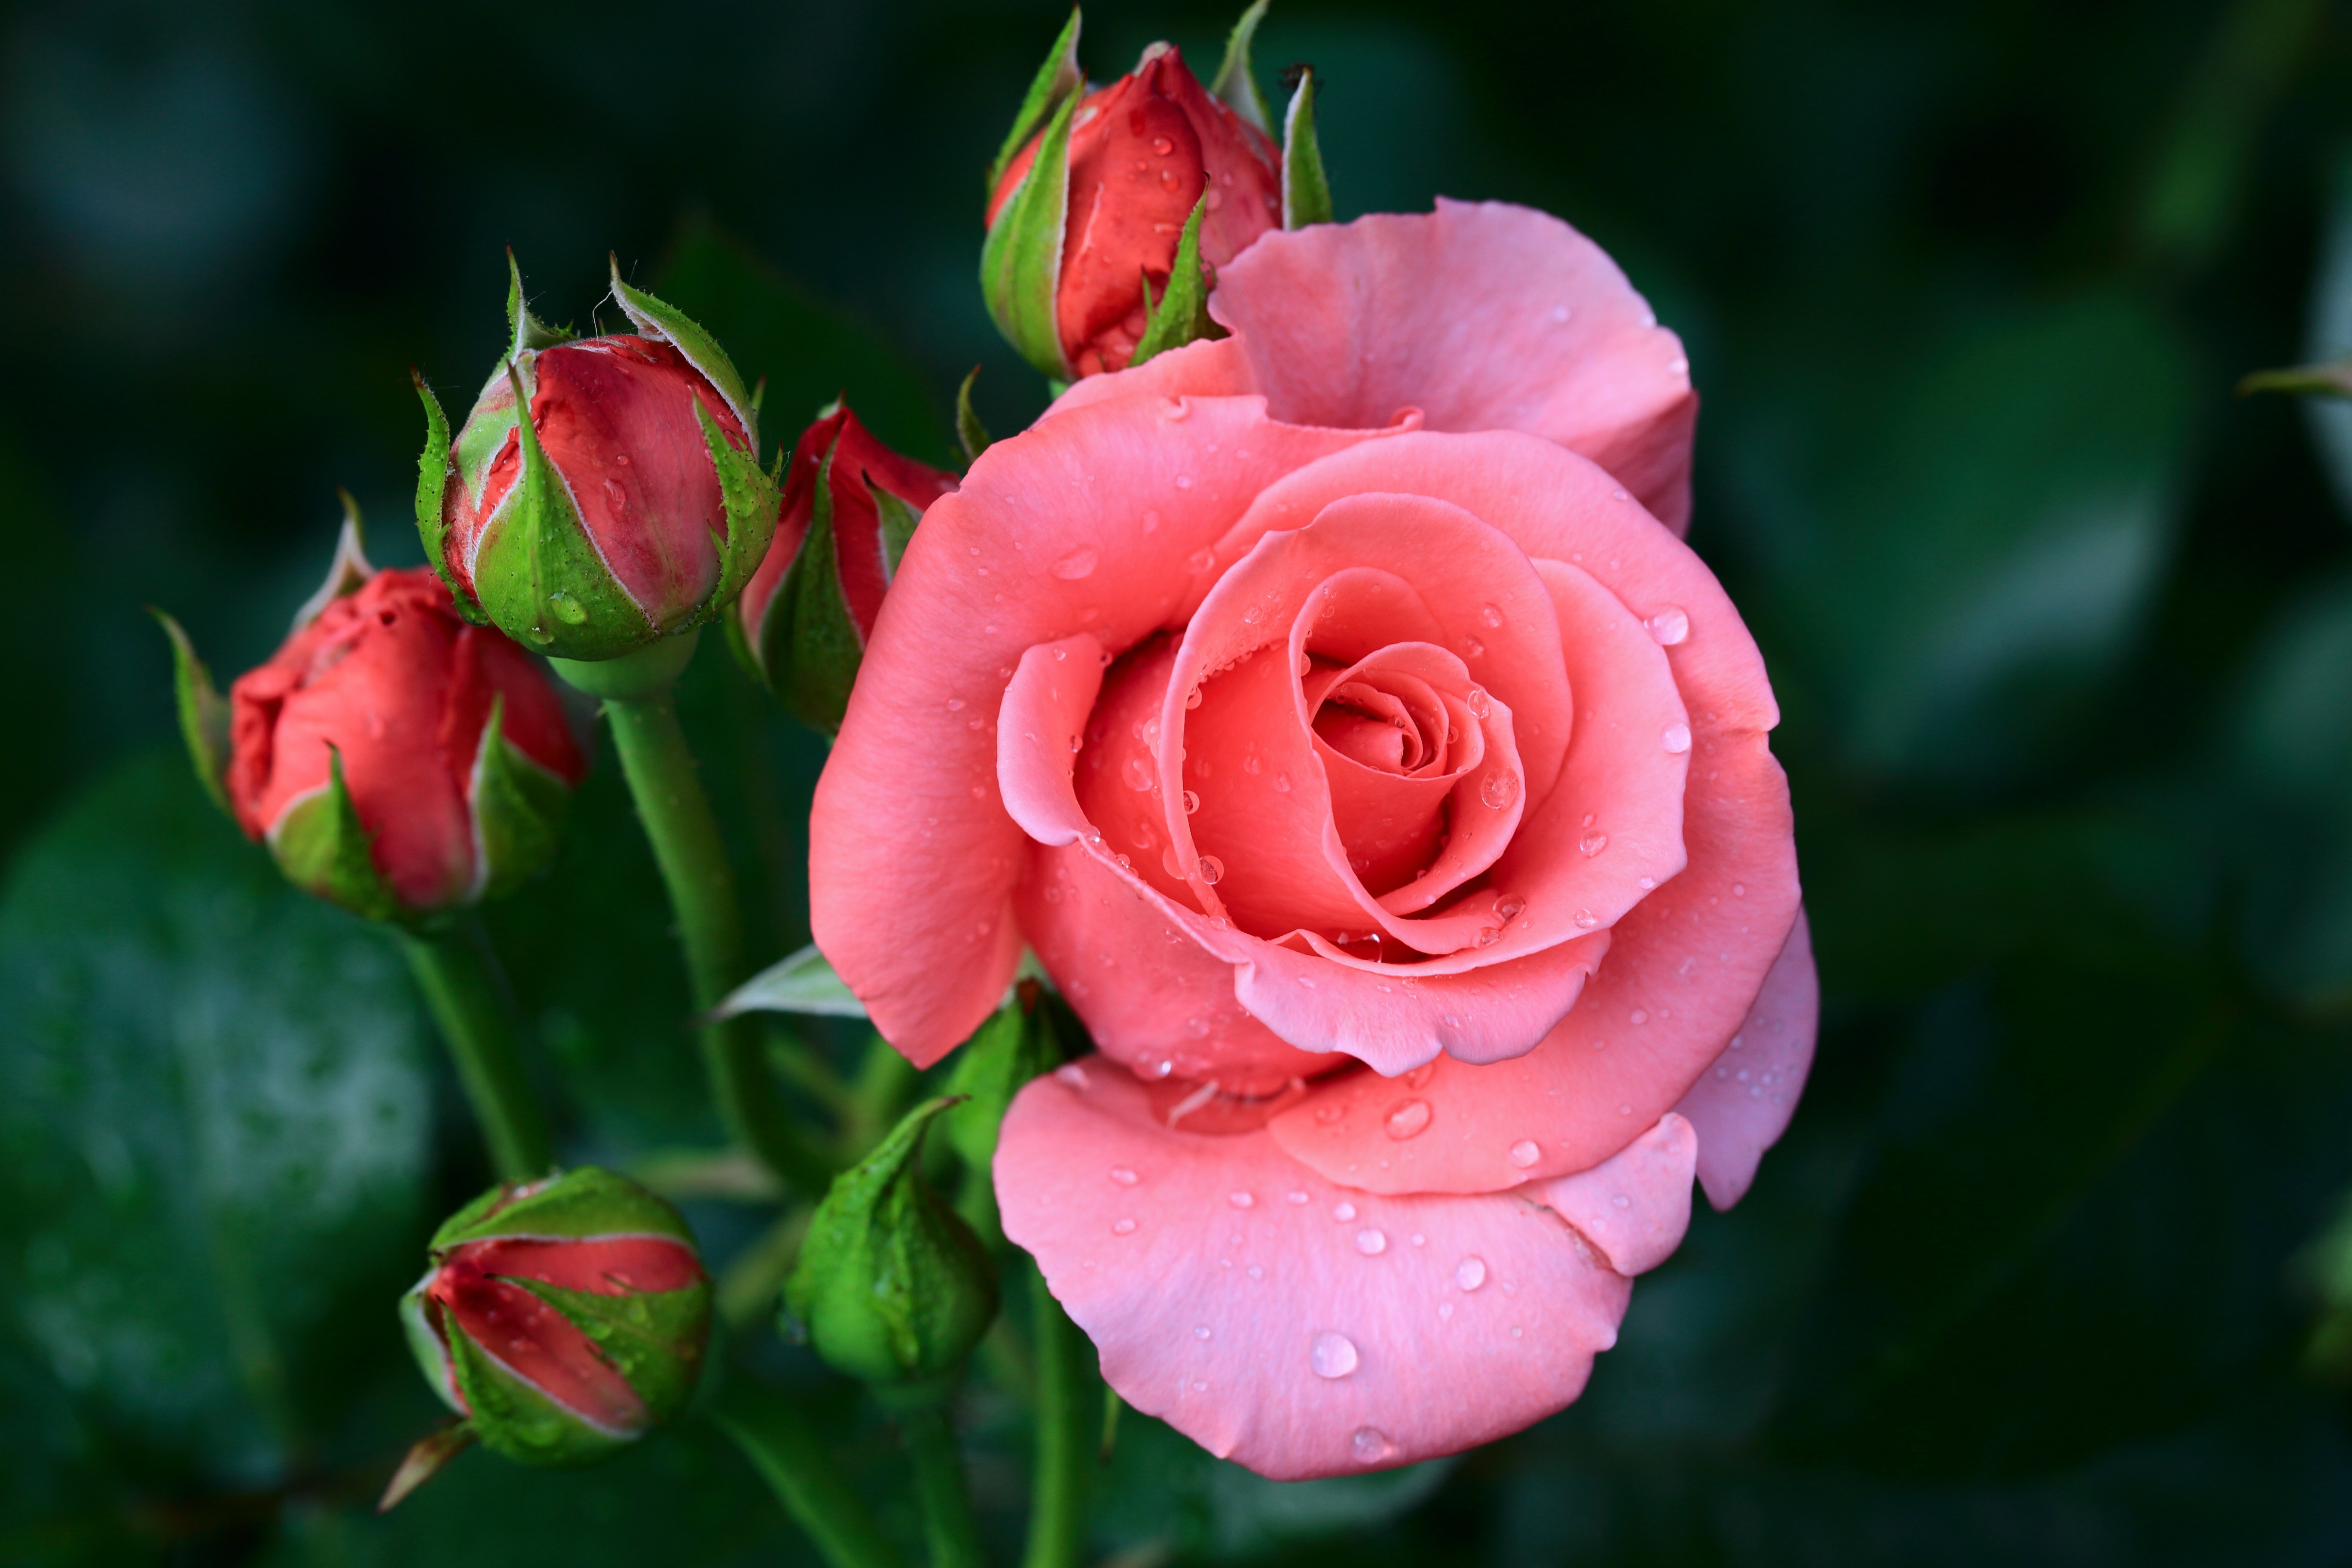 Цветок золотая роза фото